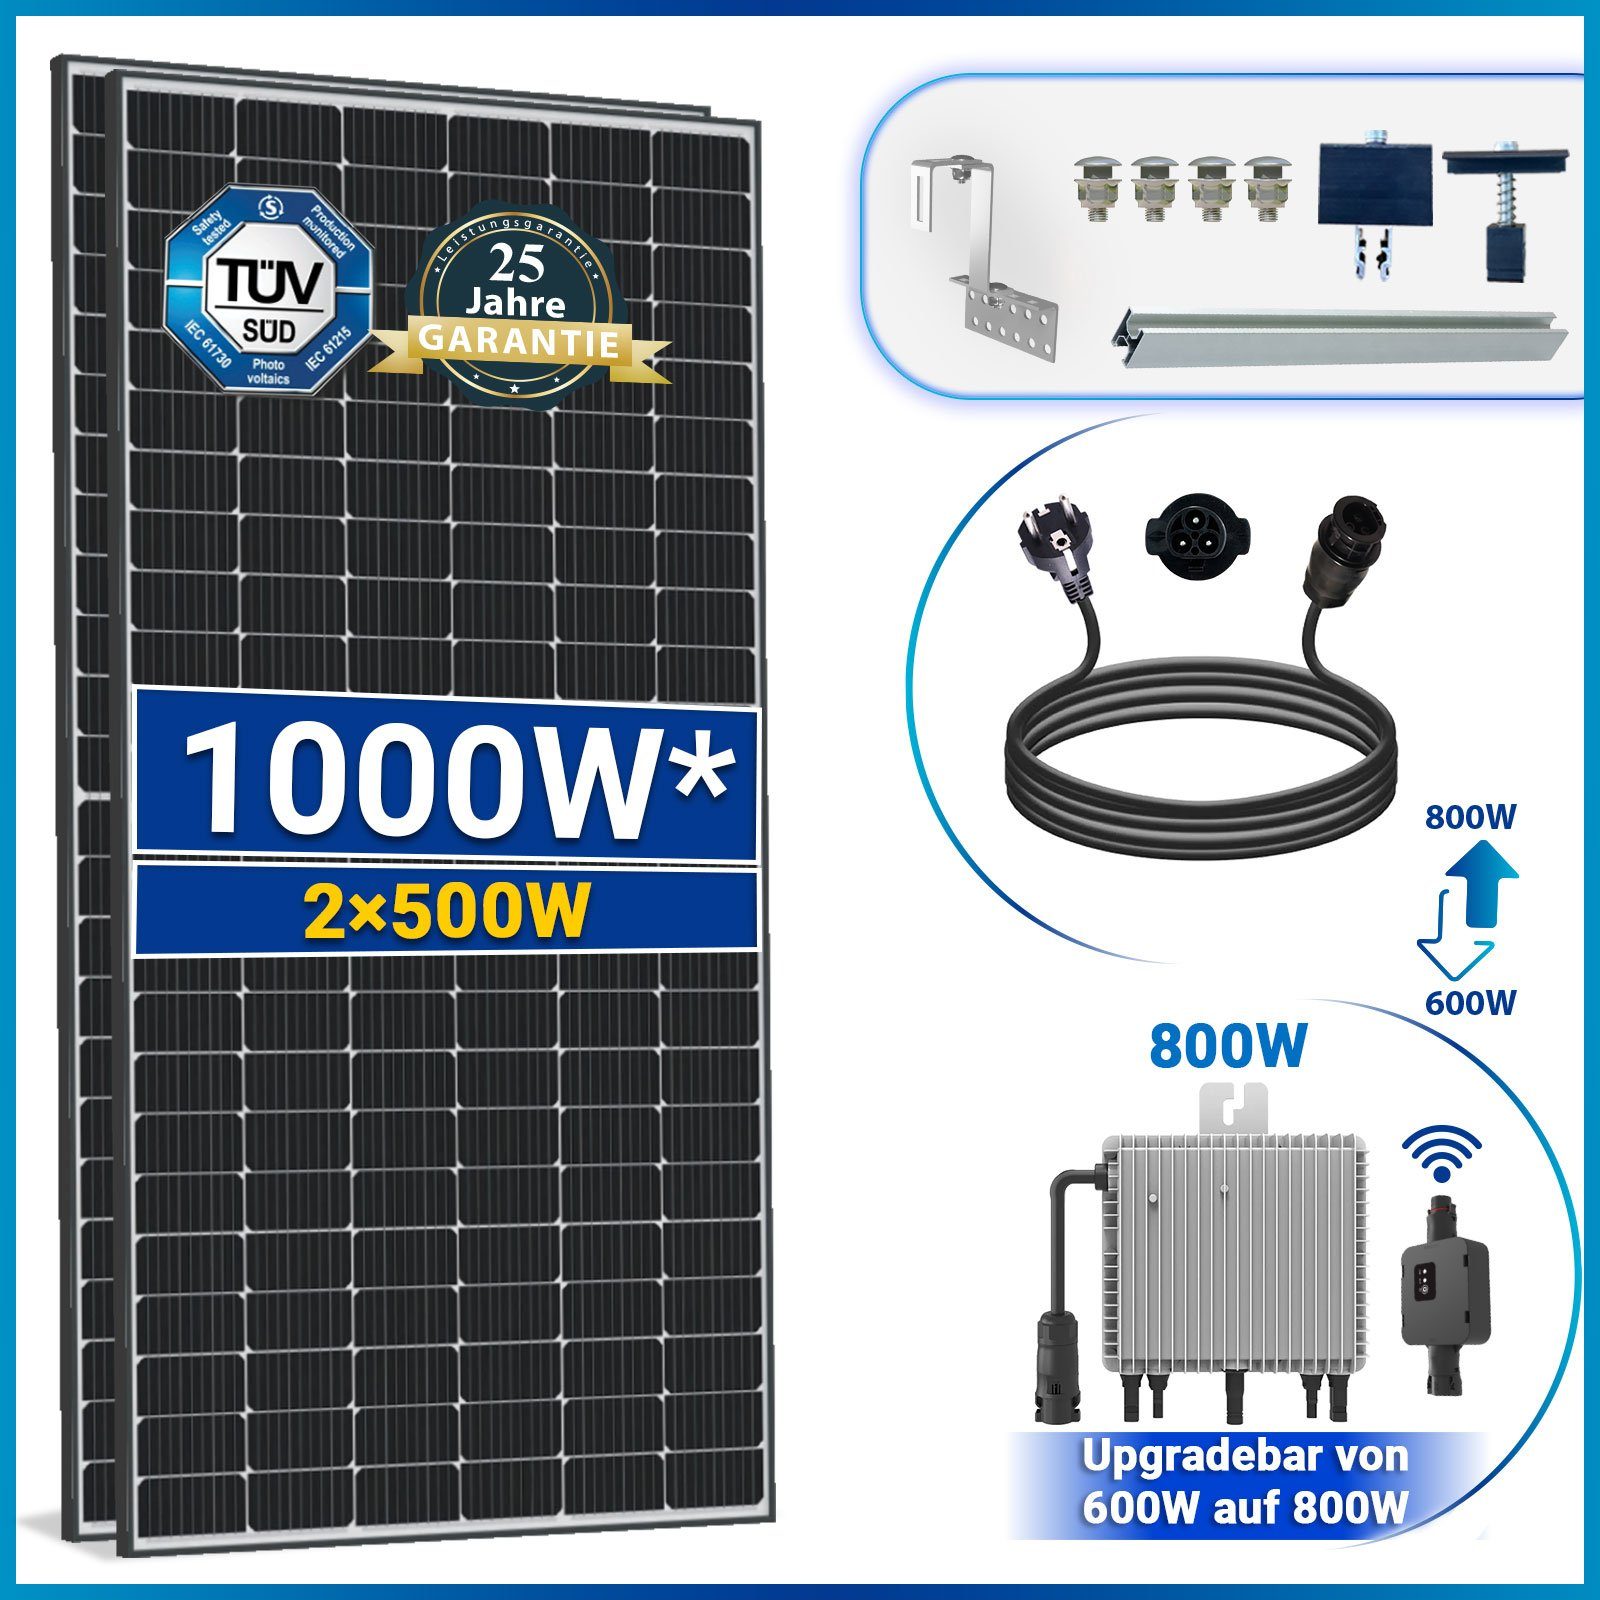 10M Wechselrichter Komplettset SOLAR-HOOK inkl. 500W Deye 800W etm Balkonkraftwerk Solaranlage Neu Generation Schuckostecker mit Ziegeldach und 1000W PV-Montage, Relais WIFI Solarmodule,